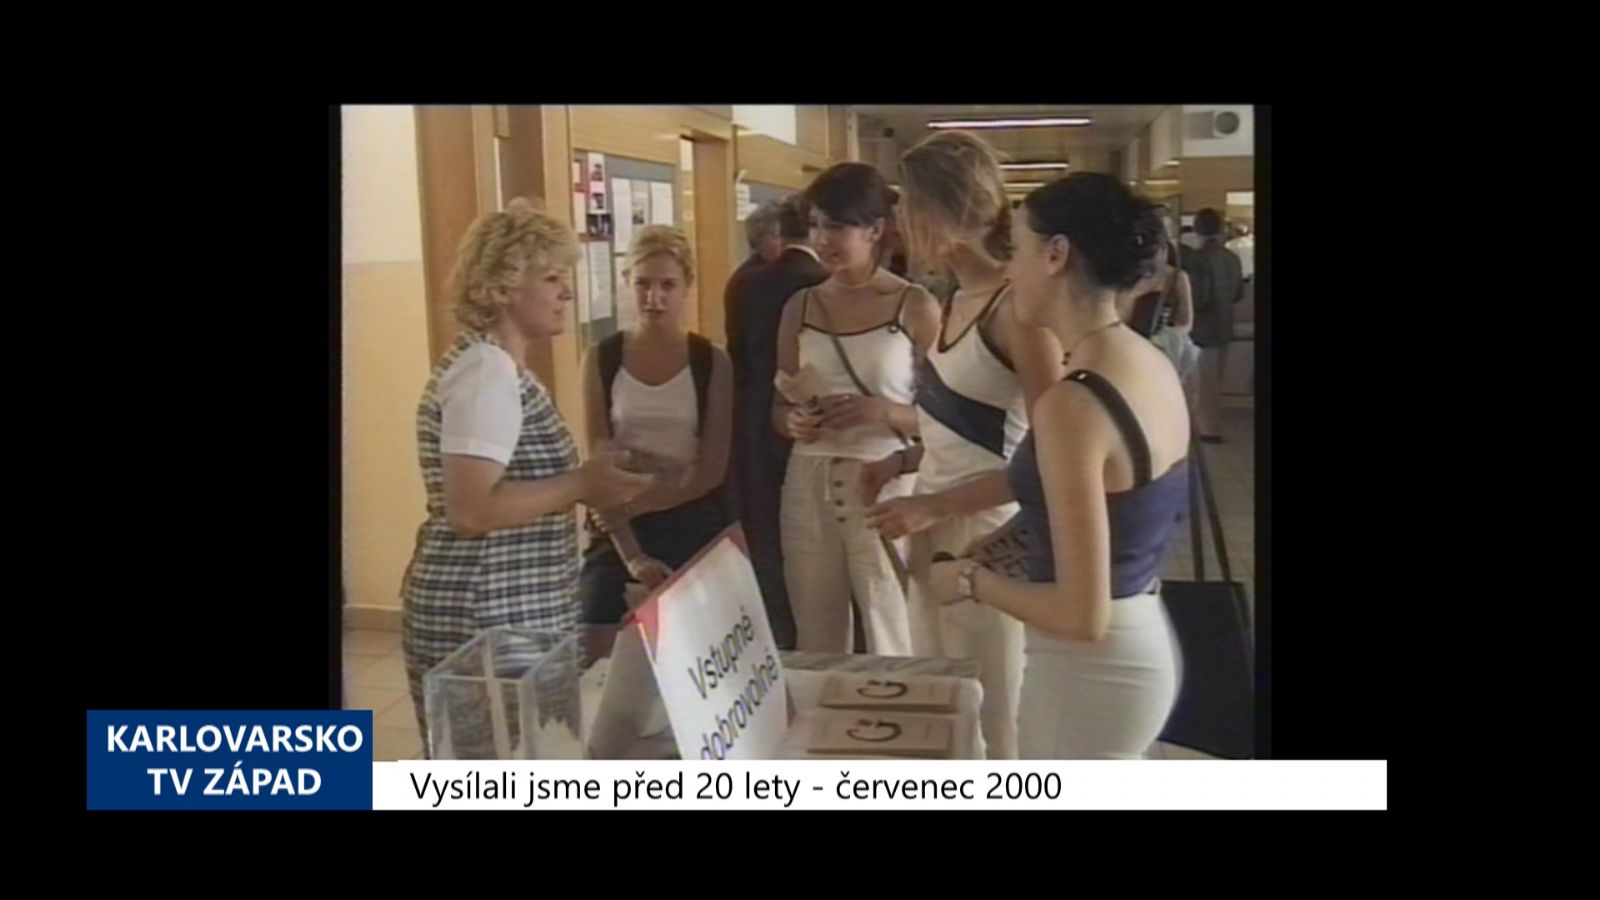 2000 – Cheb: Gymnázium slavilo 700 let vzdělanosti města (TV Západ)